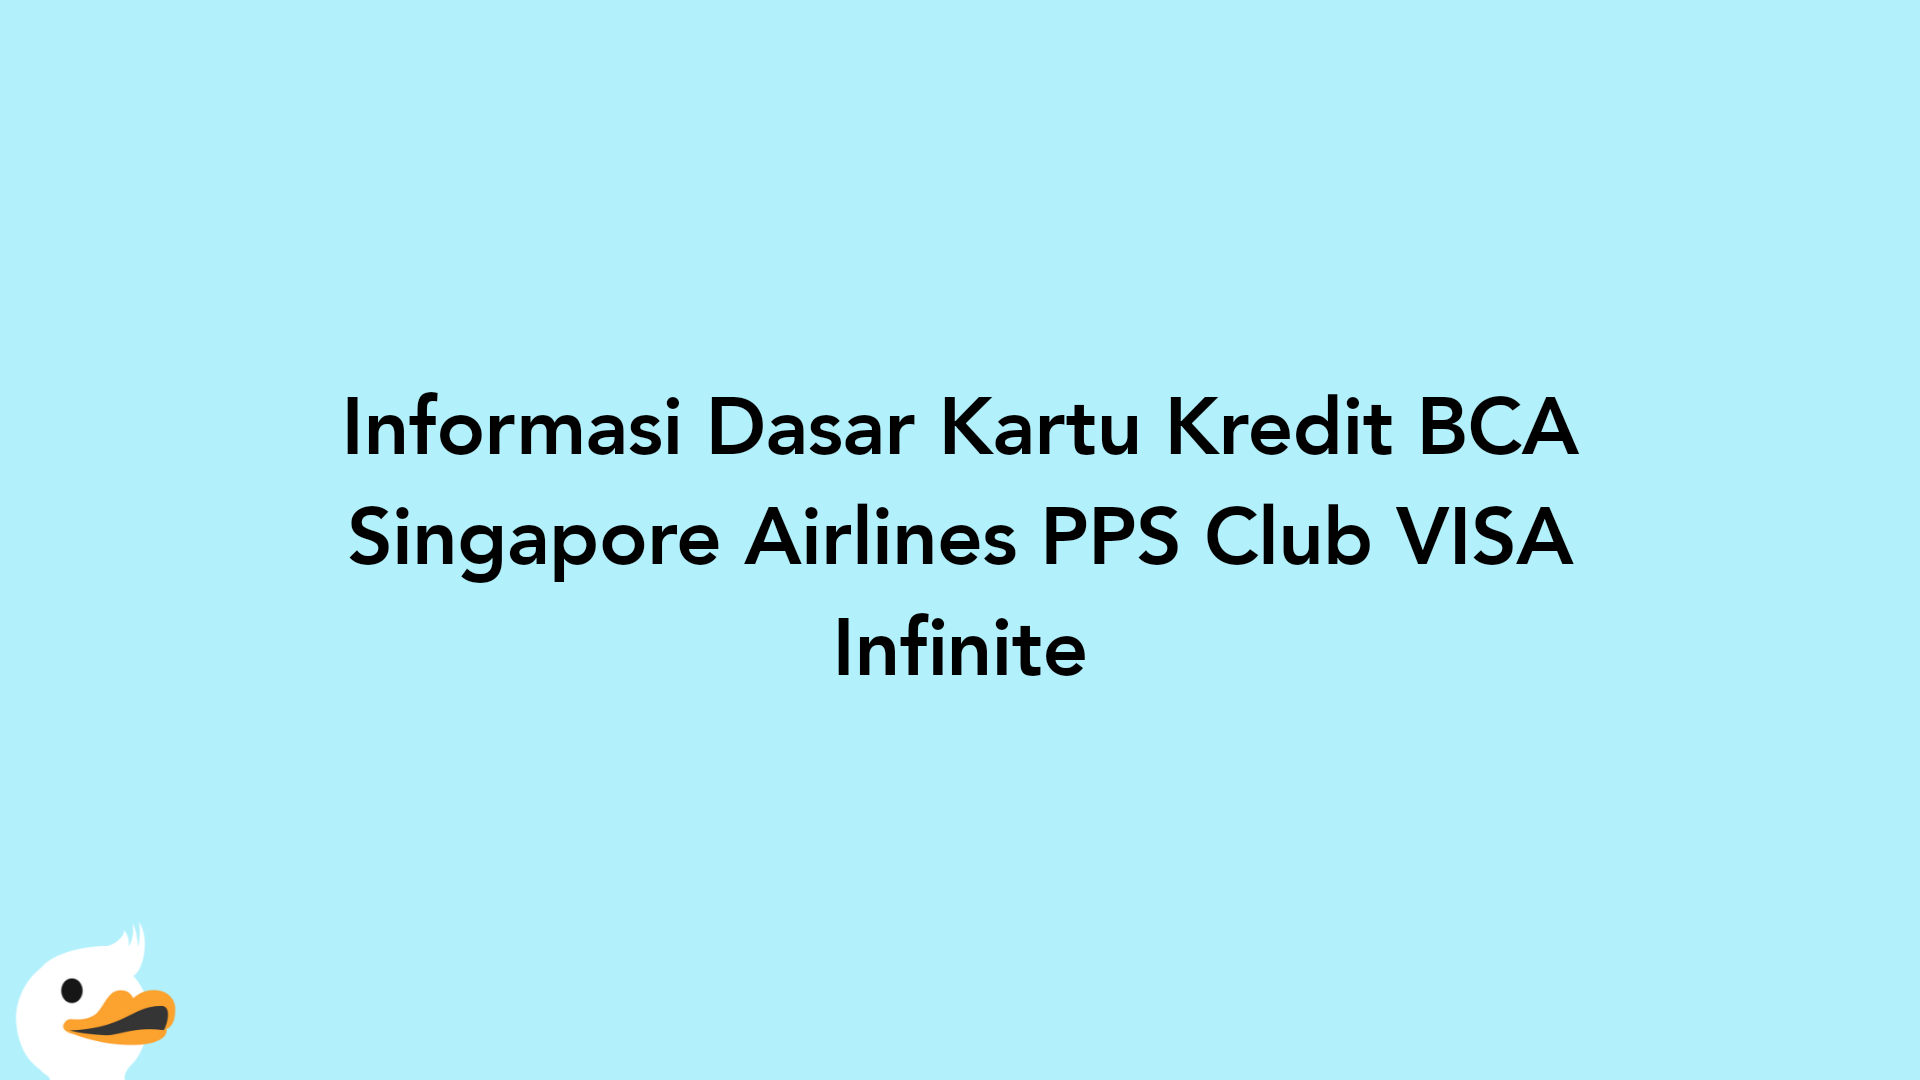 Informasi Dasar Kartu Kredit BCA Singapore Airlines PPS Club VISA Infinite